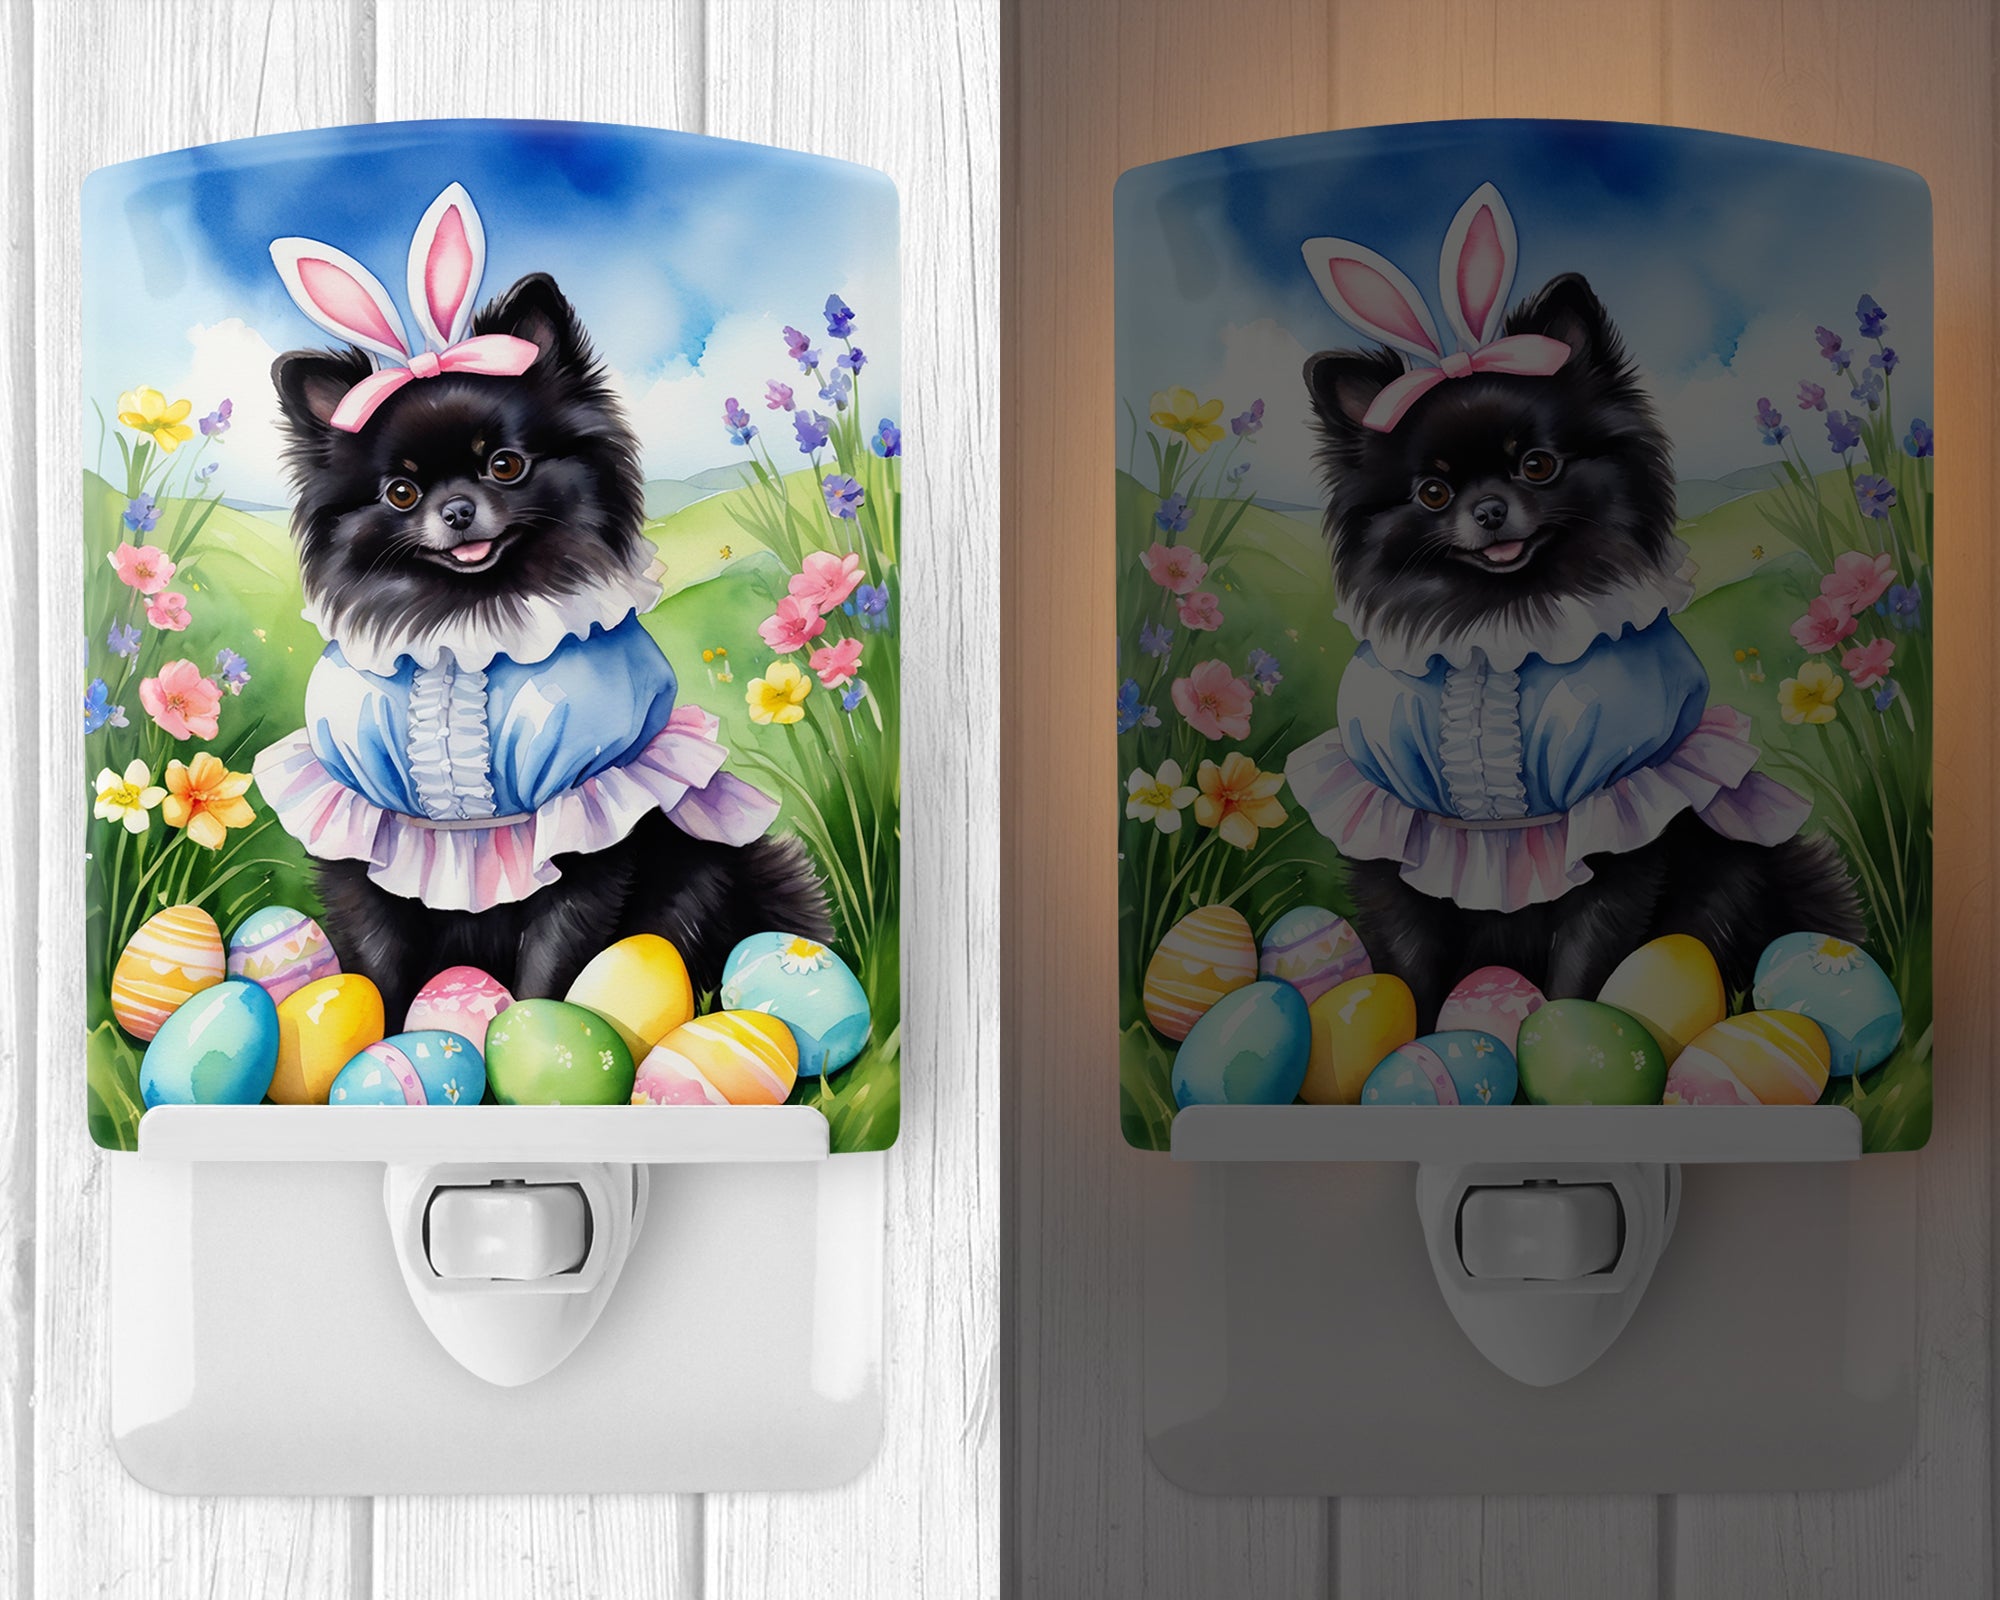 Buy this Pomeranian Easter Egg Hunt Ceramic Night Light